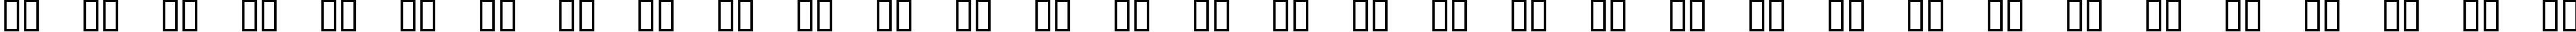 Пример написания русского алфавита шрифтом Belphebe